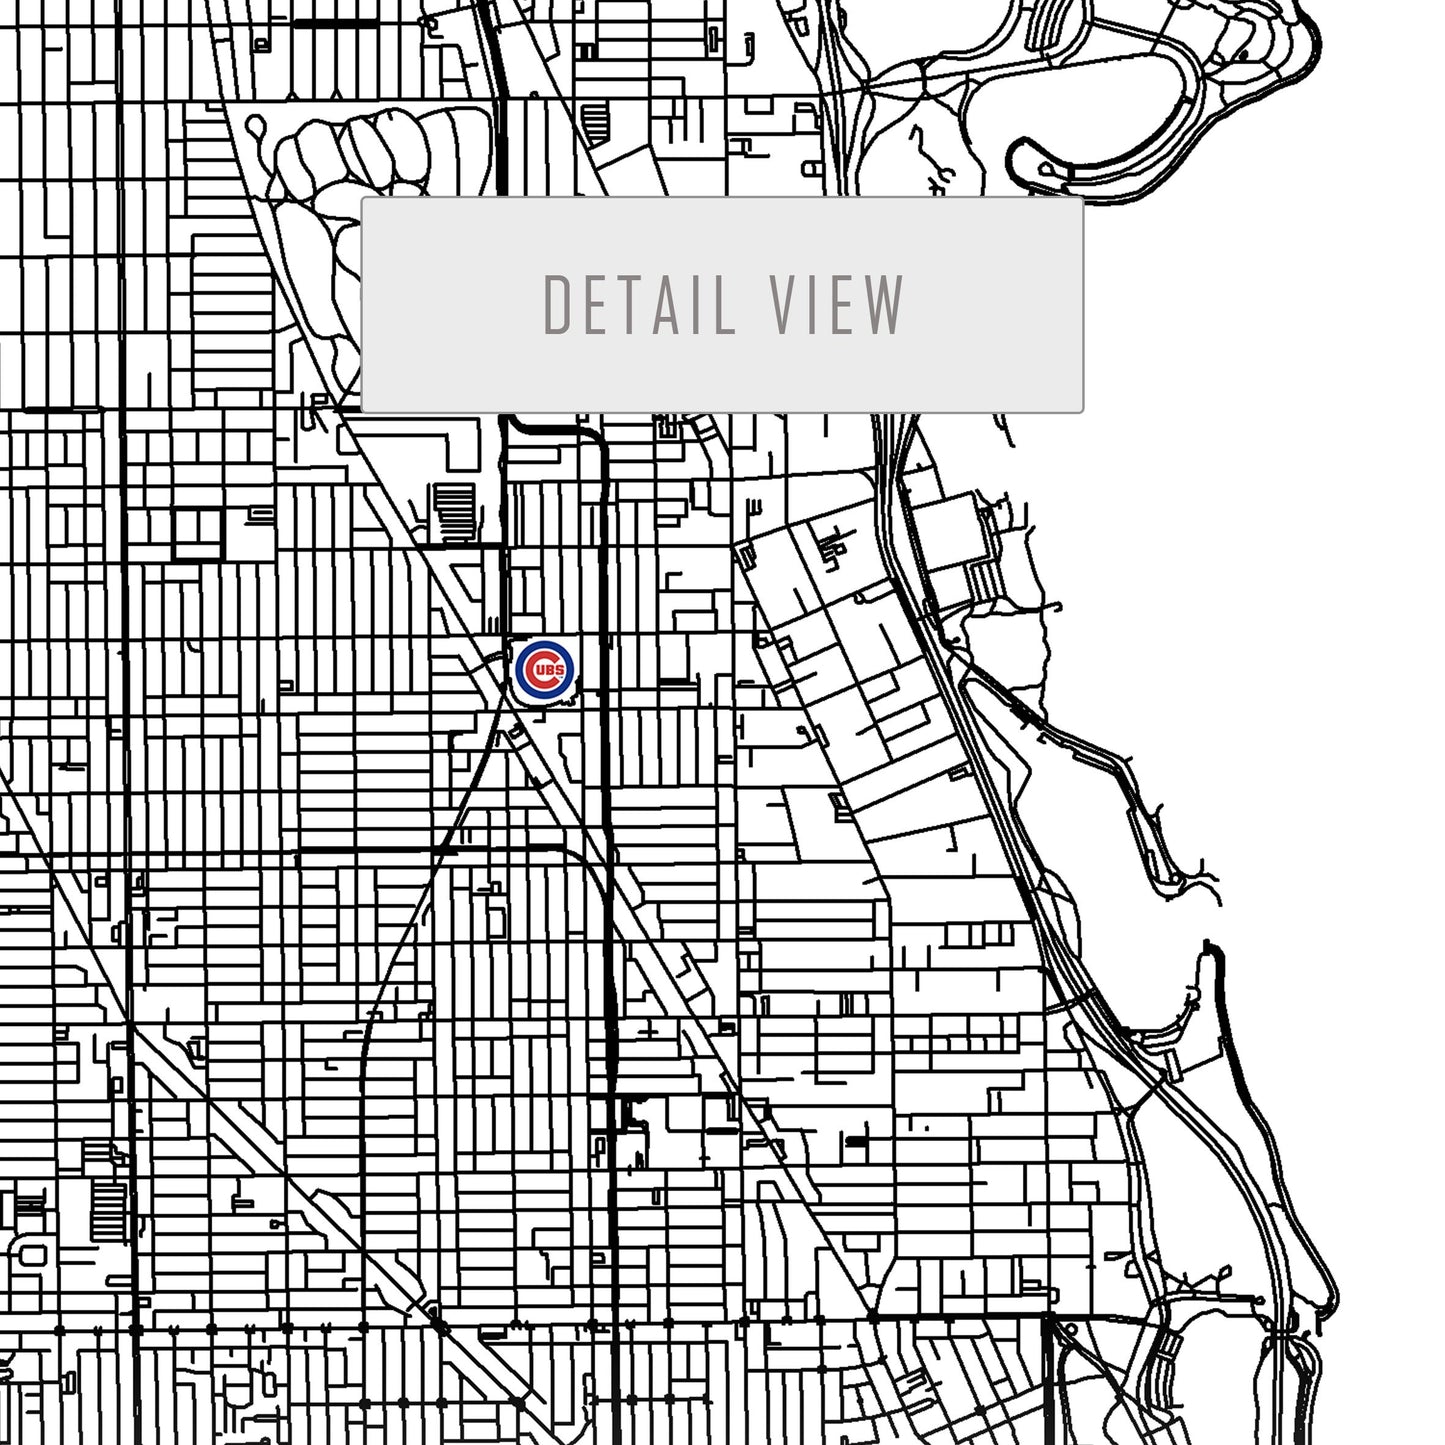 City map of CHICAGO - Home Decor Chicago - Wrigley Field wall decor - Chicago poster - Chicago Cubs - Print map